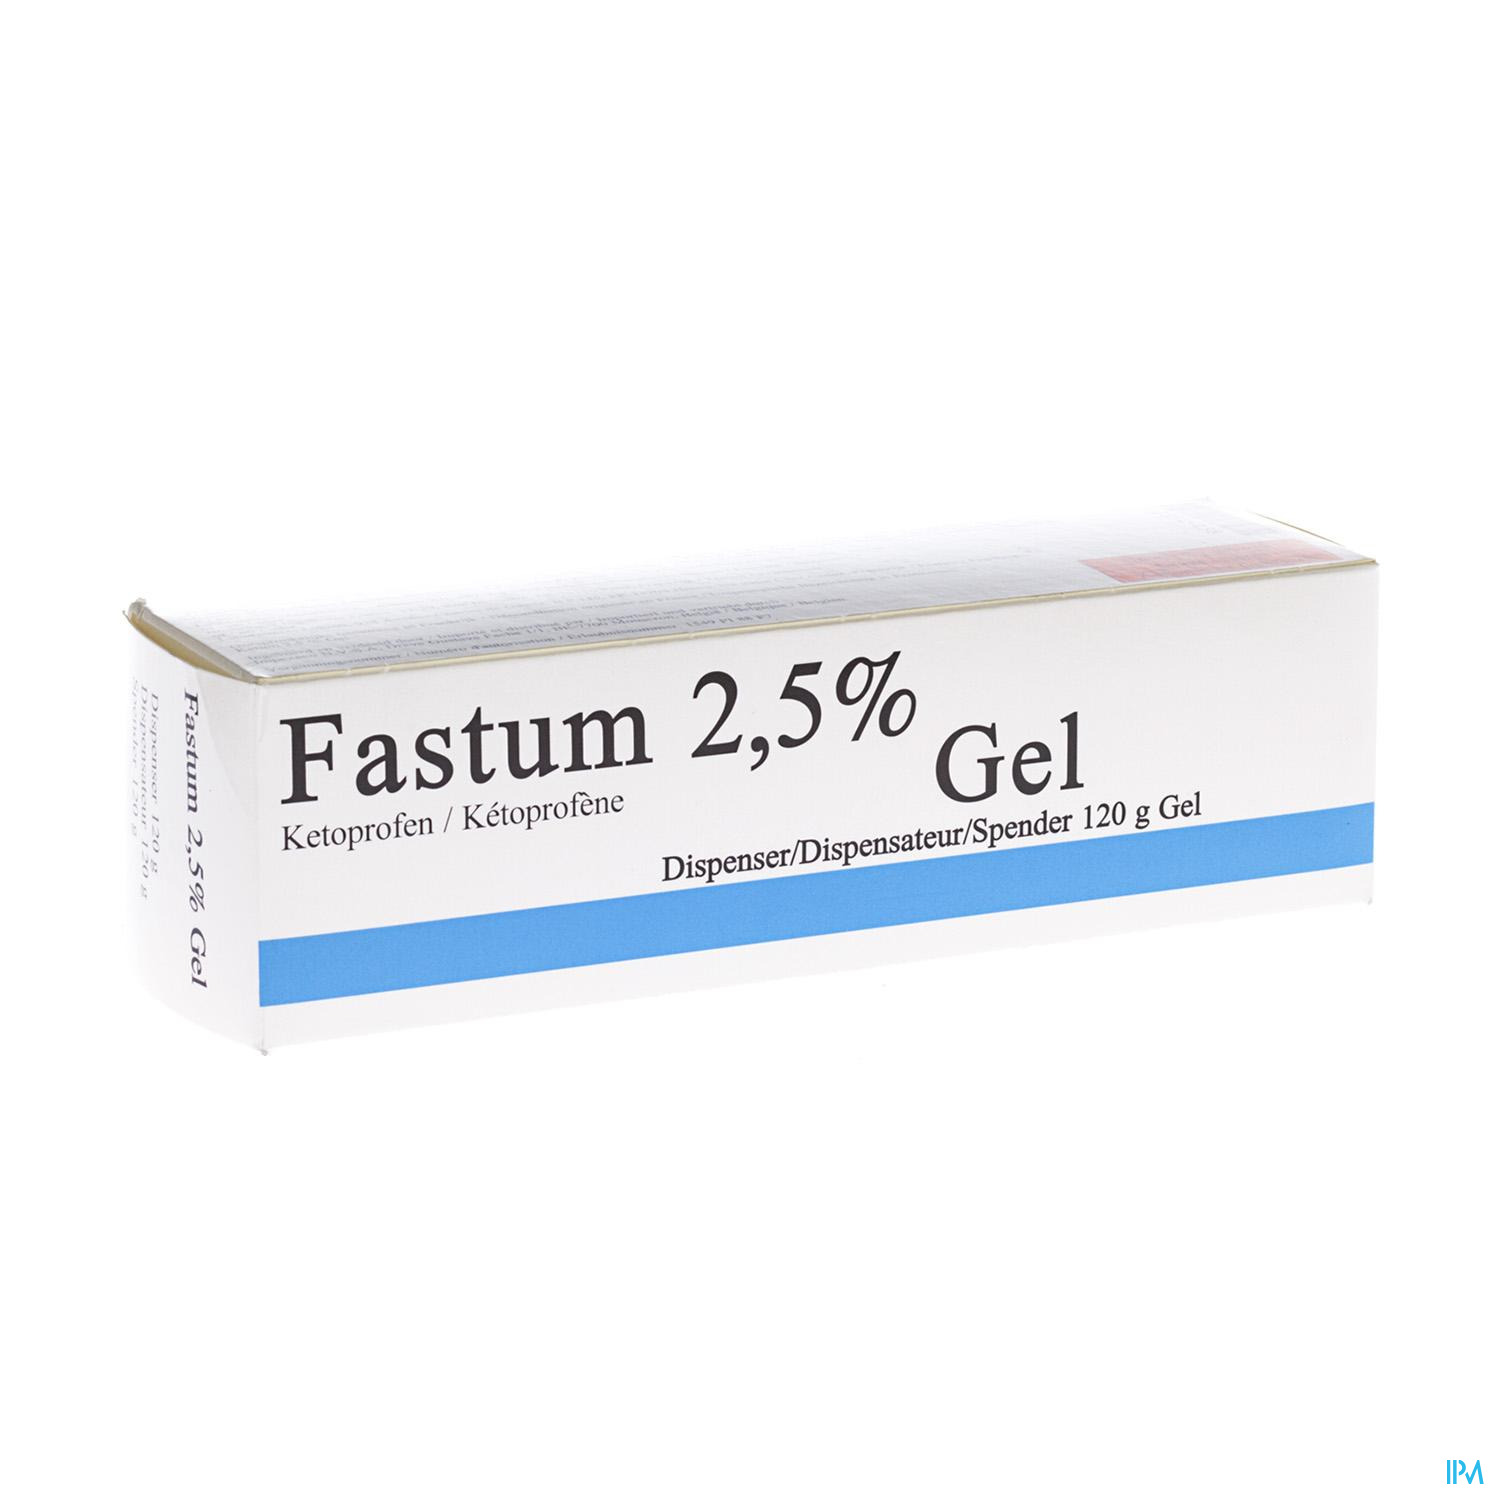 Fastum Gel 2,5% Impexeco Dispenser 120g Pip